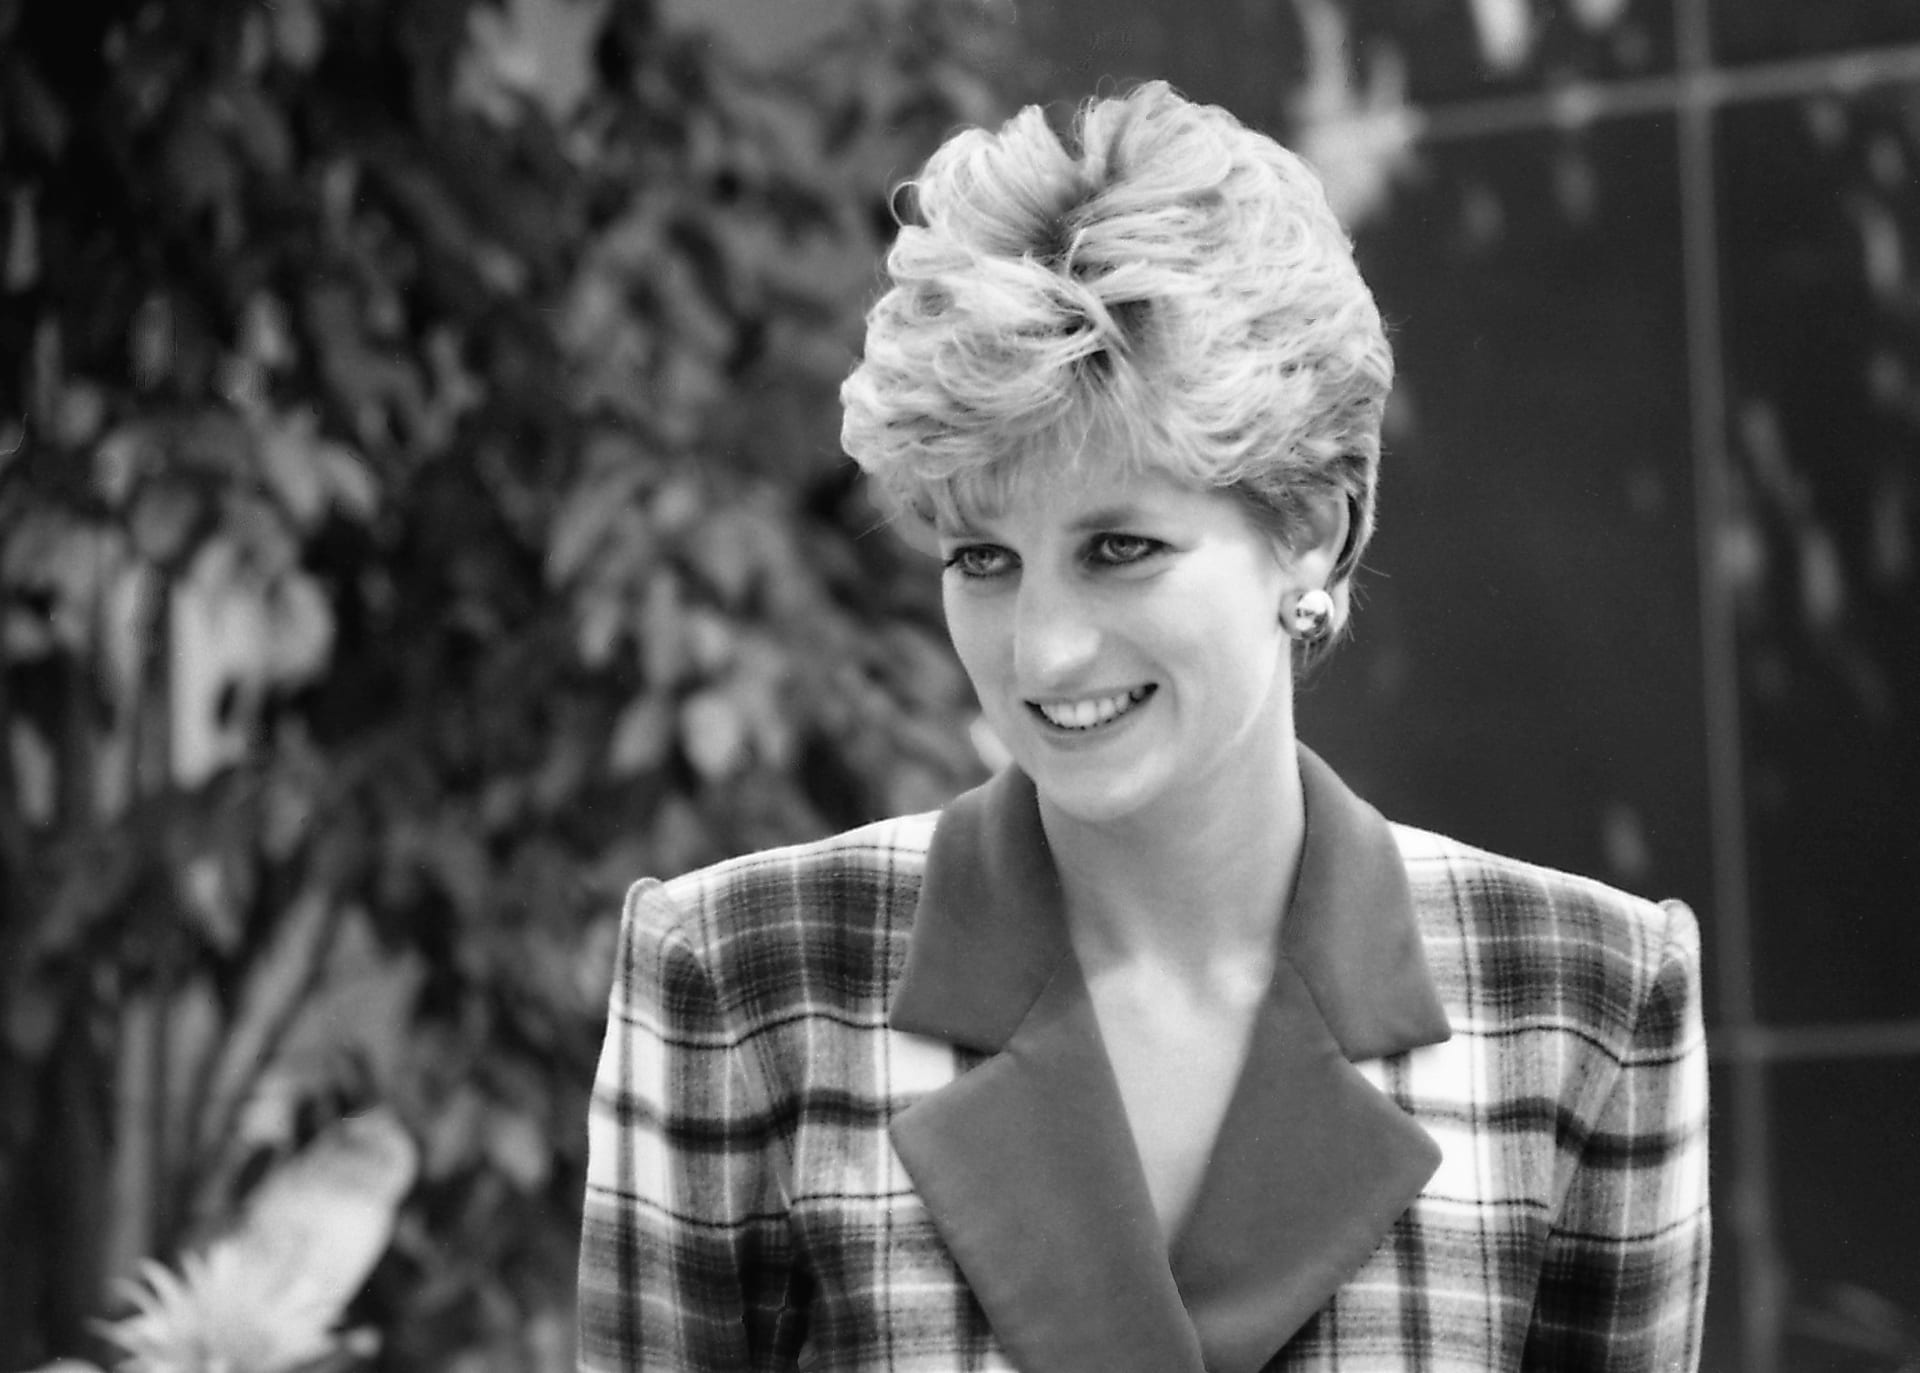 Princezna Diana byla nejfotografovanější ženou světa